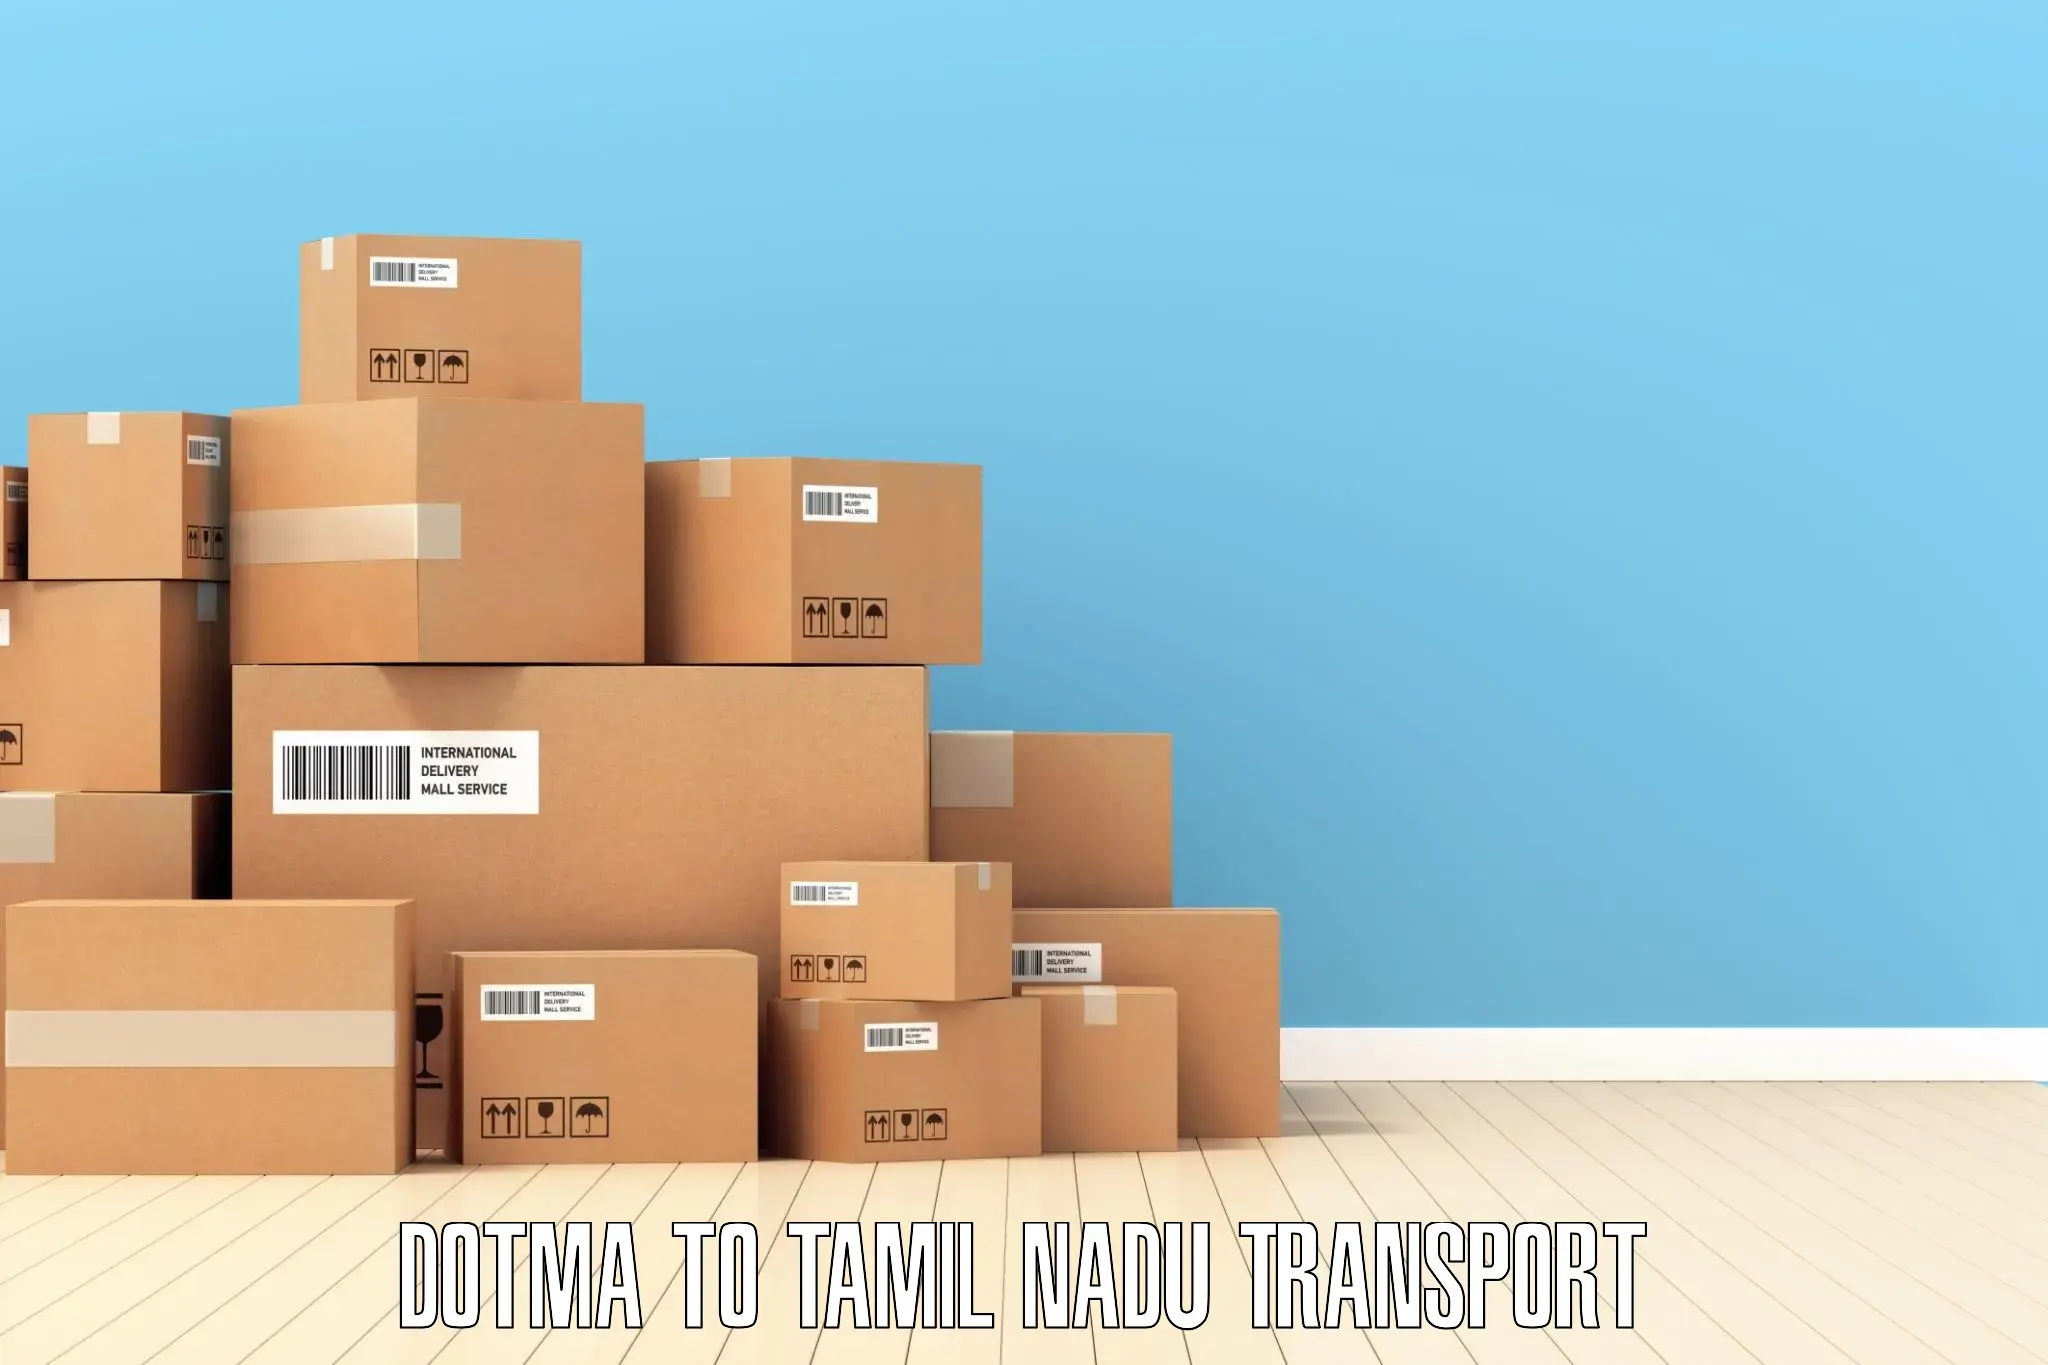 Shipping services Dotma to Tenkasi